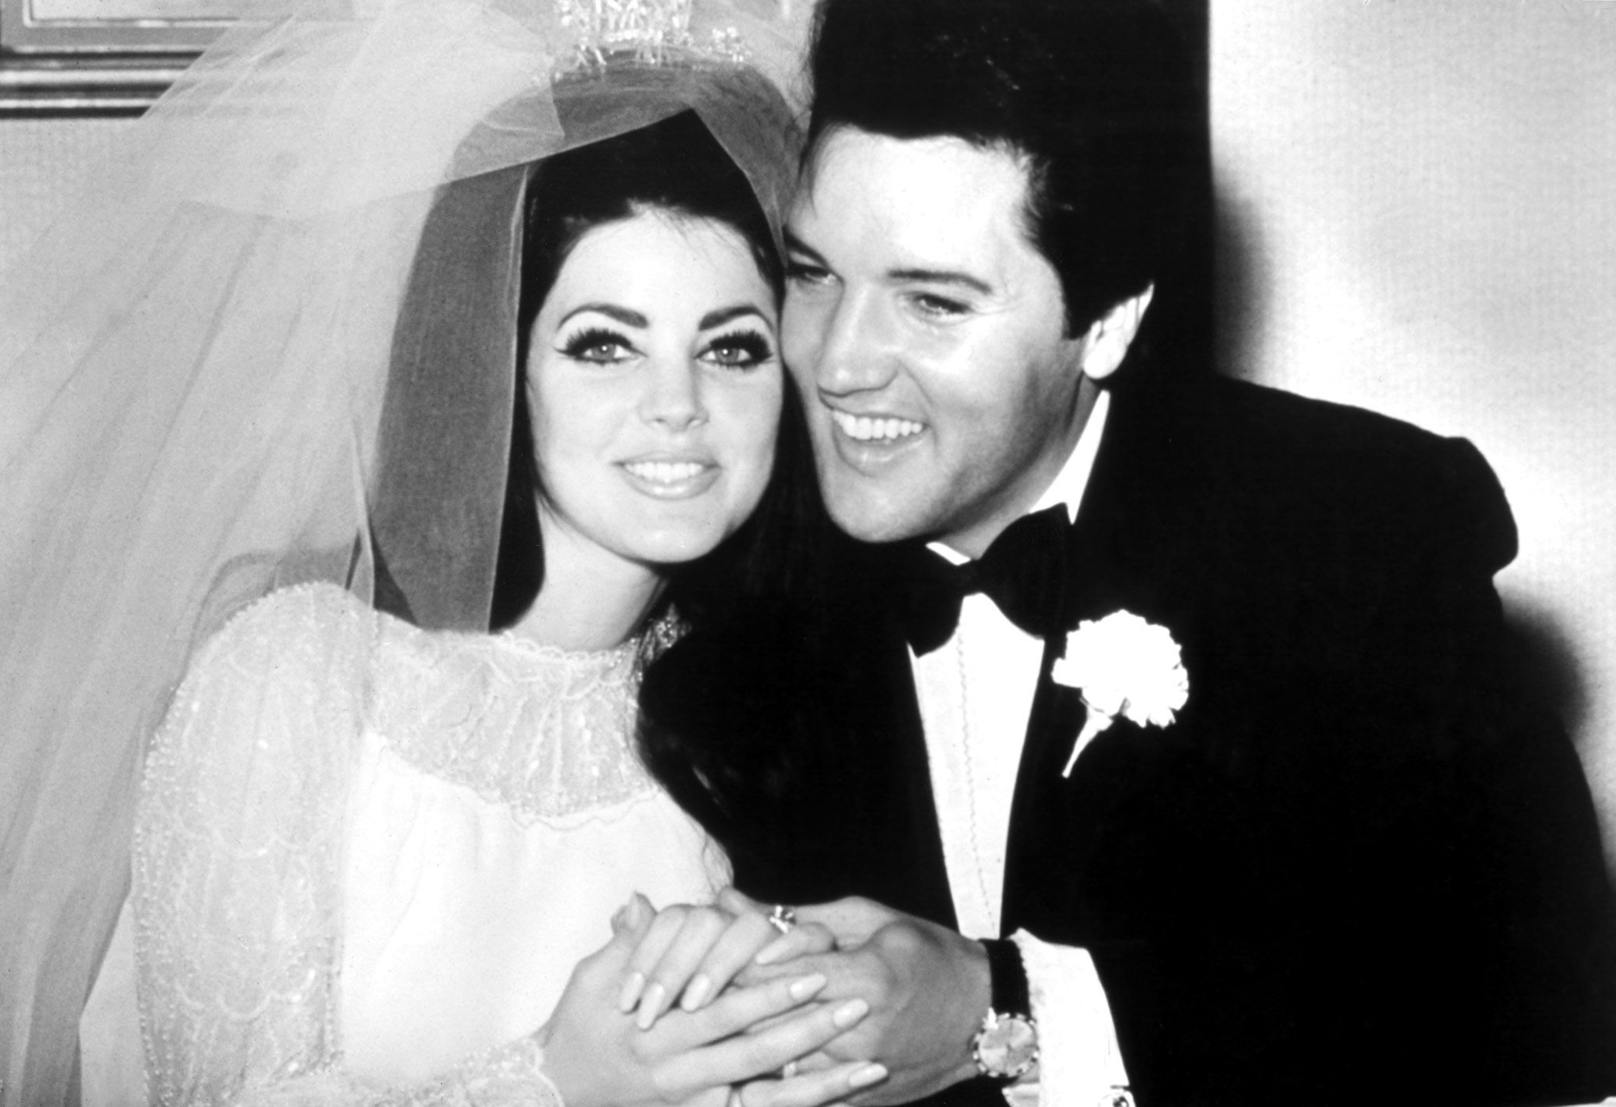 Hochzeitsbild von Priscilla und Elvis Presley aus dem Jahr 1967.